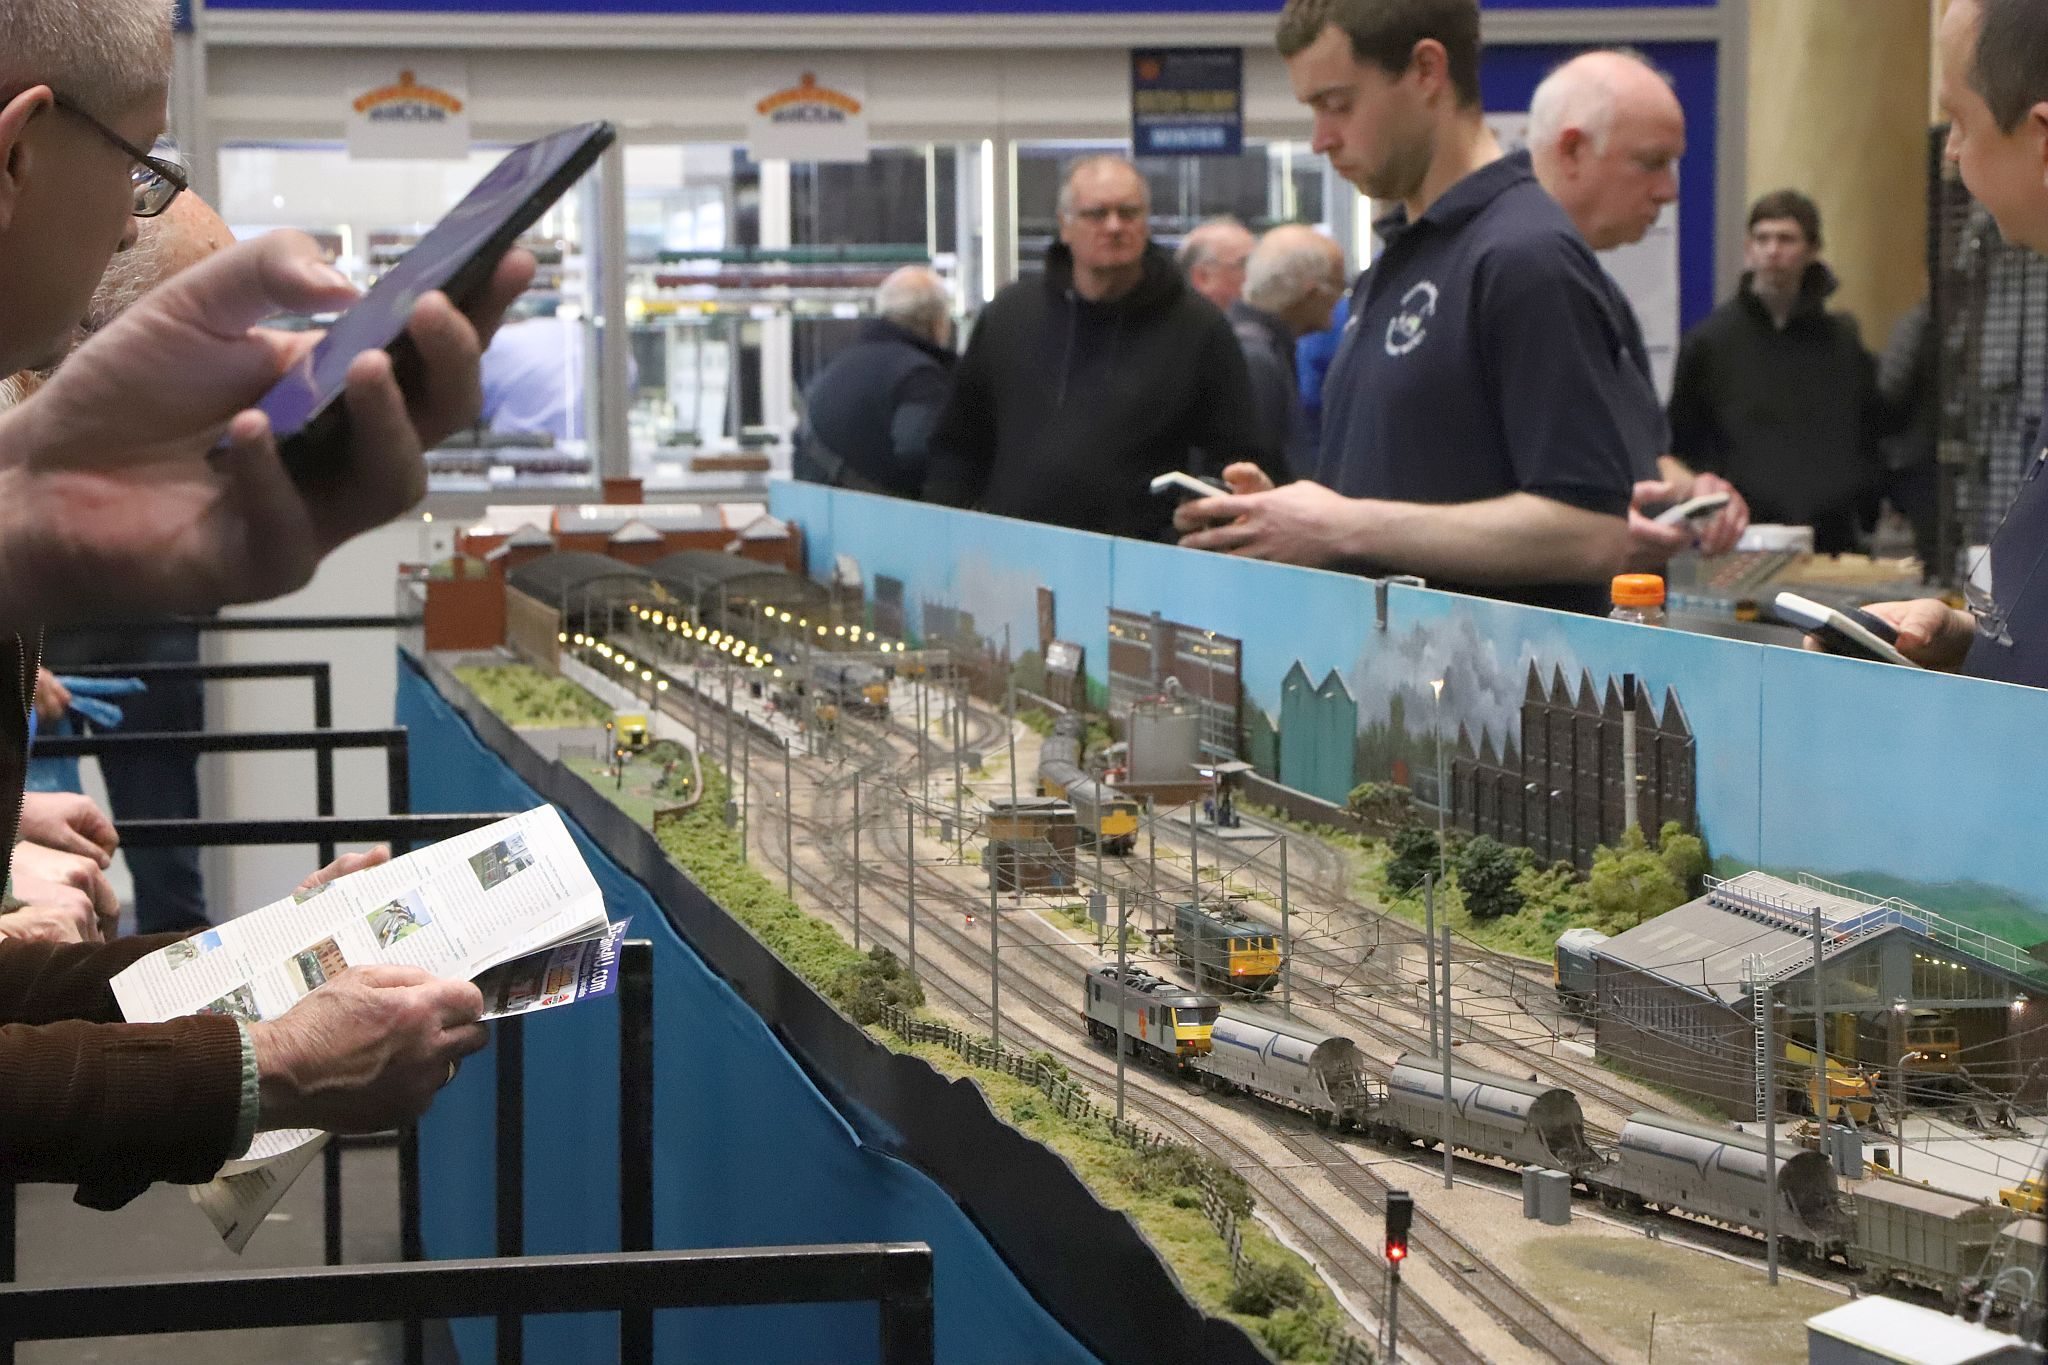 Alderford OO Gauge model railway layout. 2023 London Festival of Railway Modelling, Alexandra Palace, London